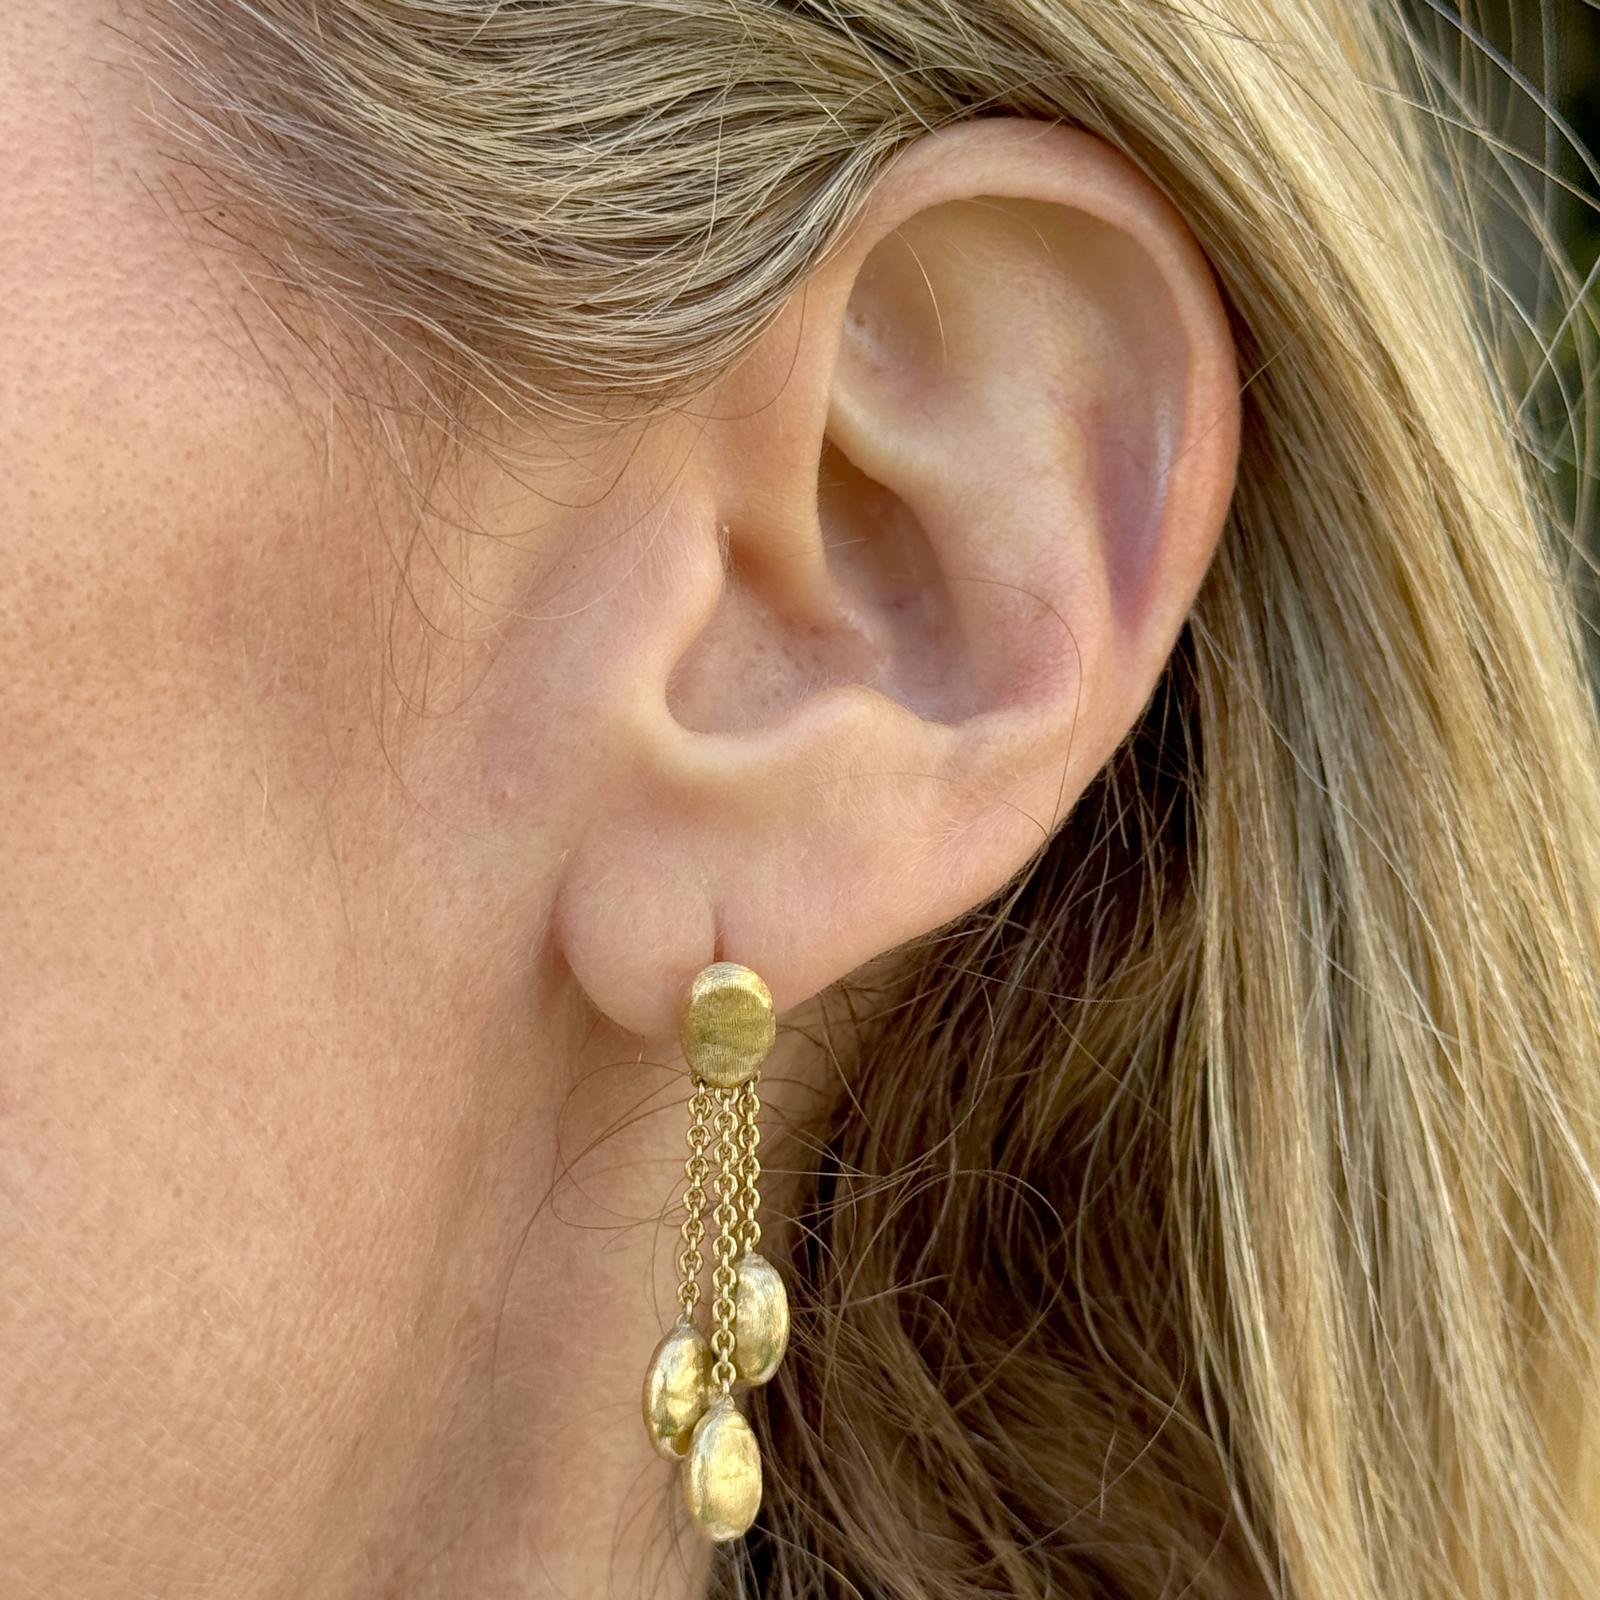 Boucles d'oreilles pendantes Marco Bicego Siviglia en or jaune 18 carats. Les boucles d'oreilles goutte mesurent 1.25 pouces de long. Les dos sont en or 18 carats mais ne sont pas d'origine. Poids : 4.5 grammes.